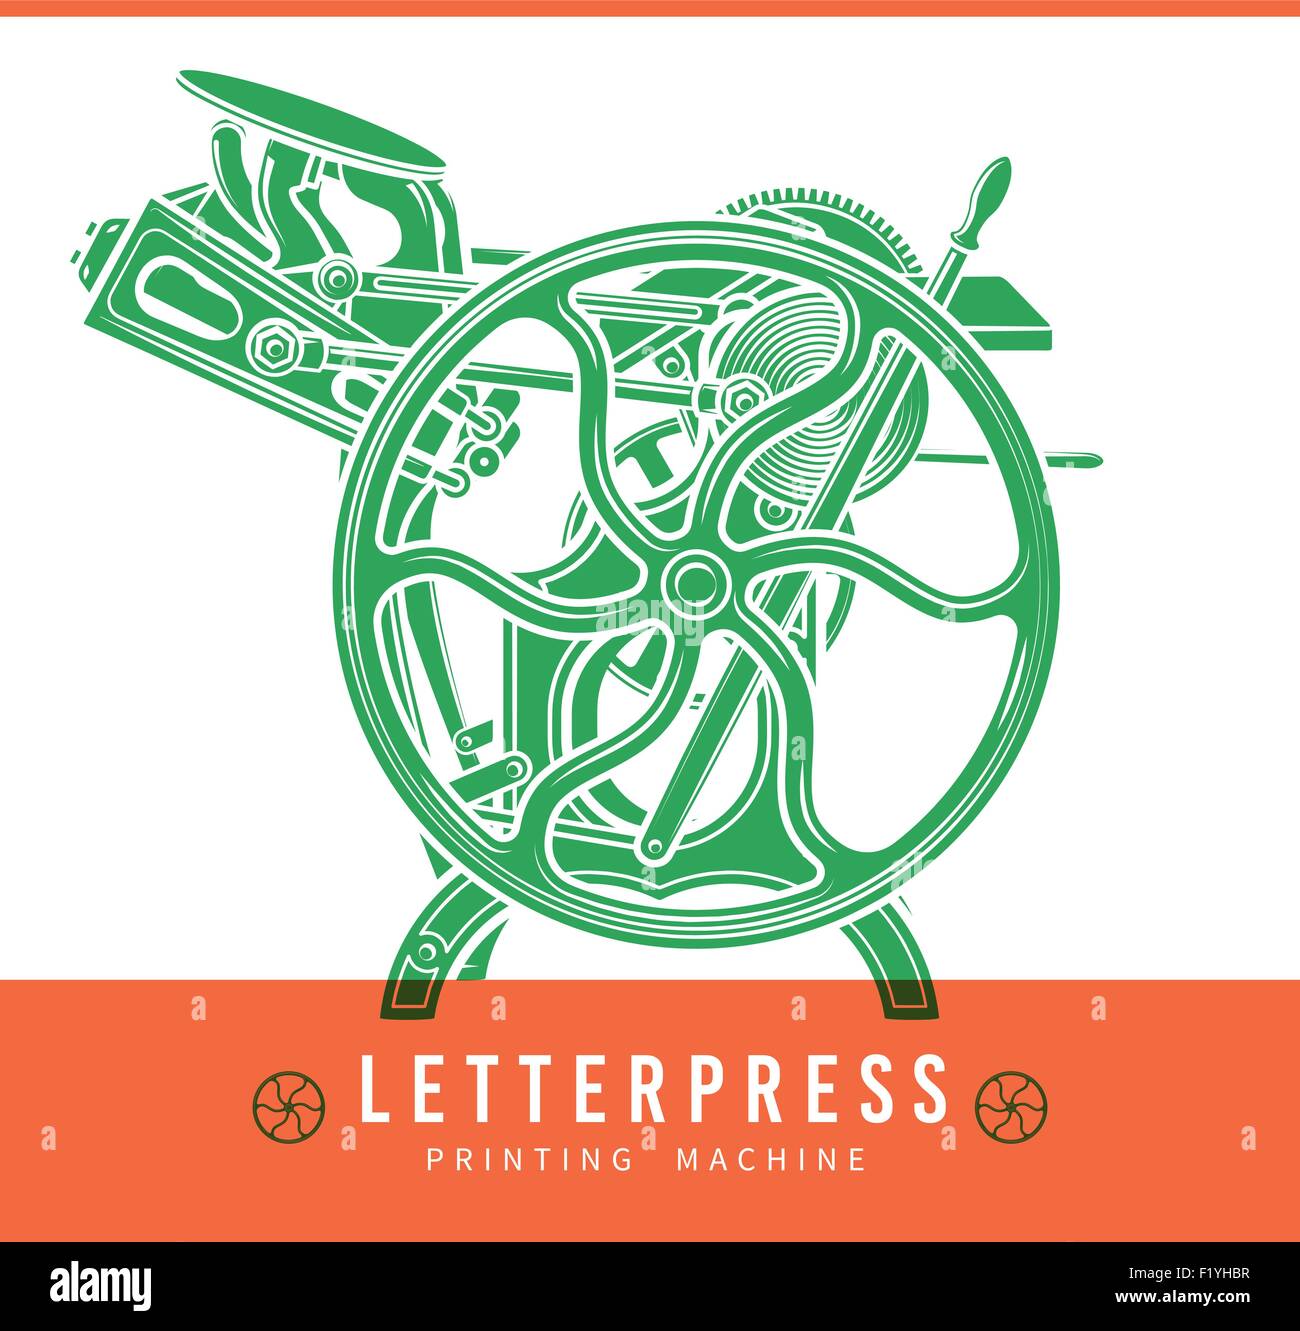 Letterpress overprint vector design. Vintage printshop logo. Old printing machine illustration. Stock Vector